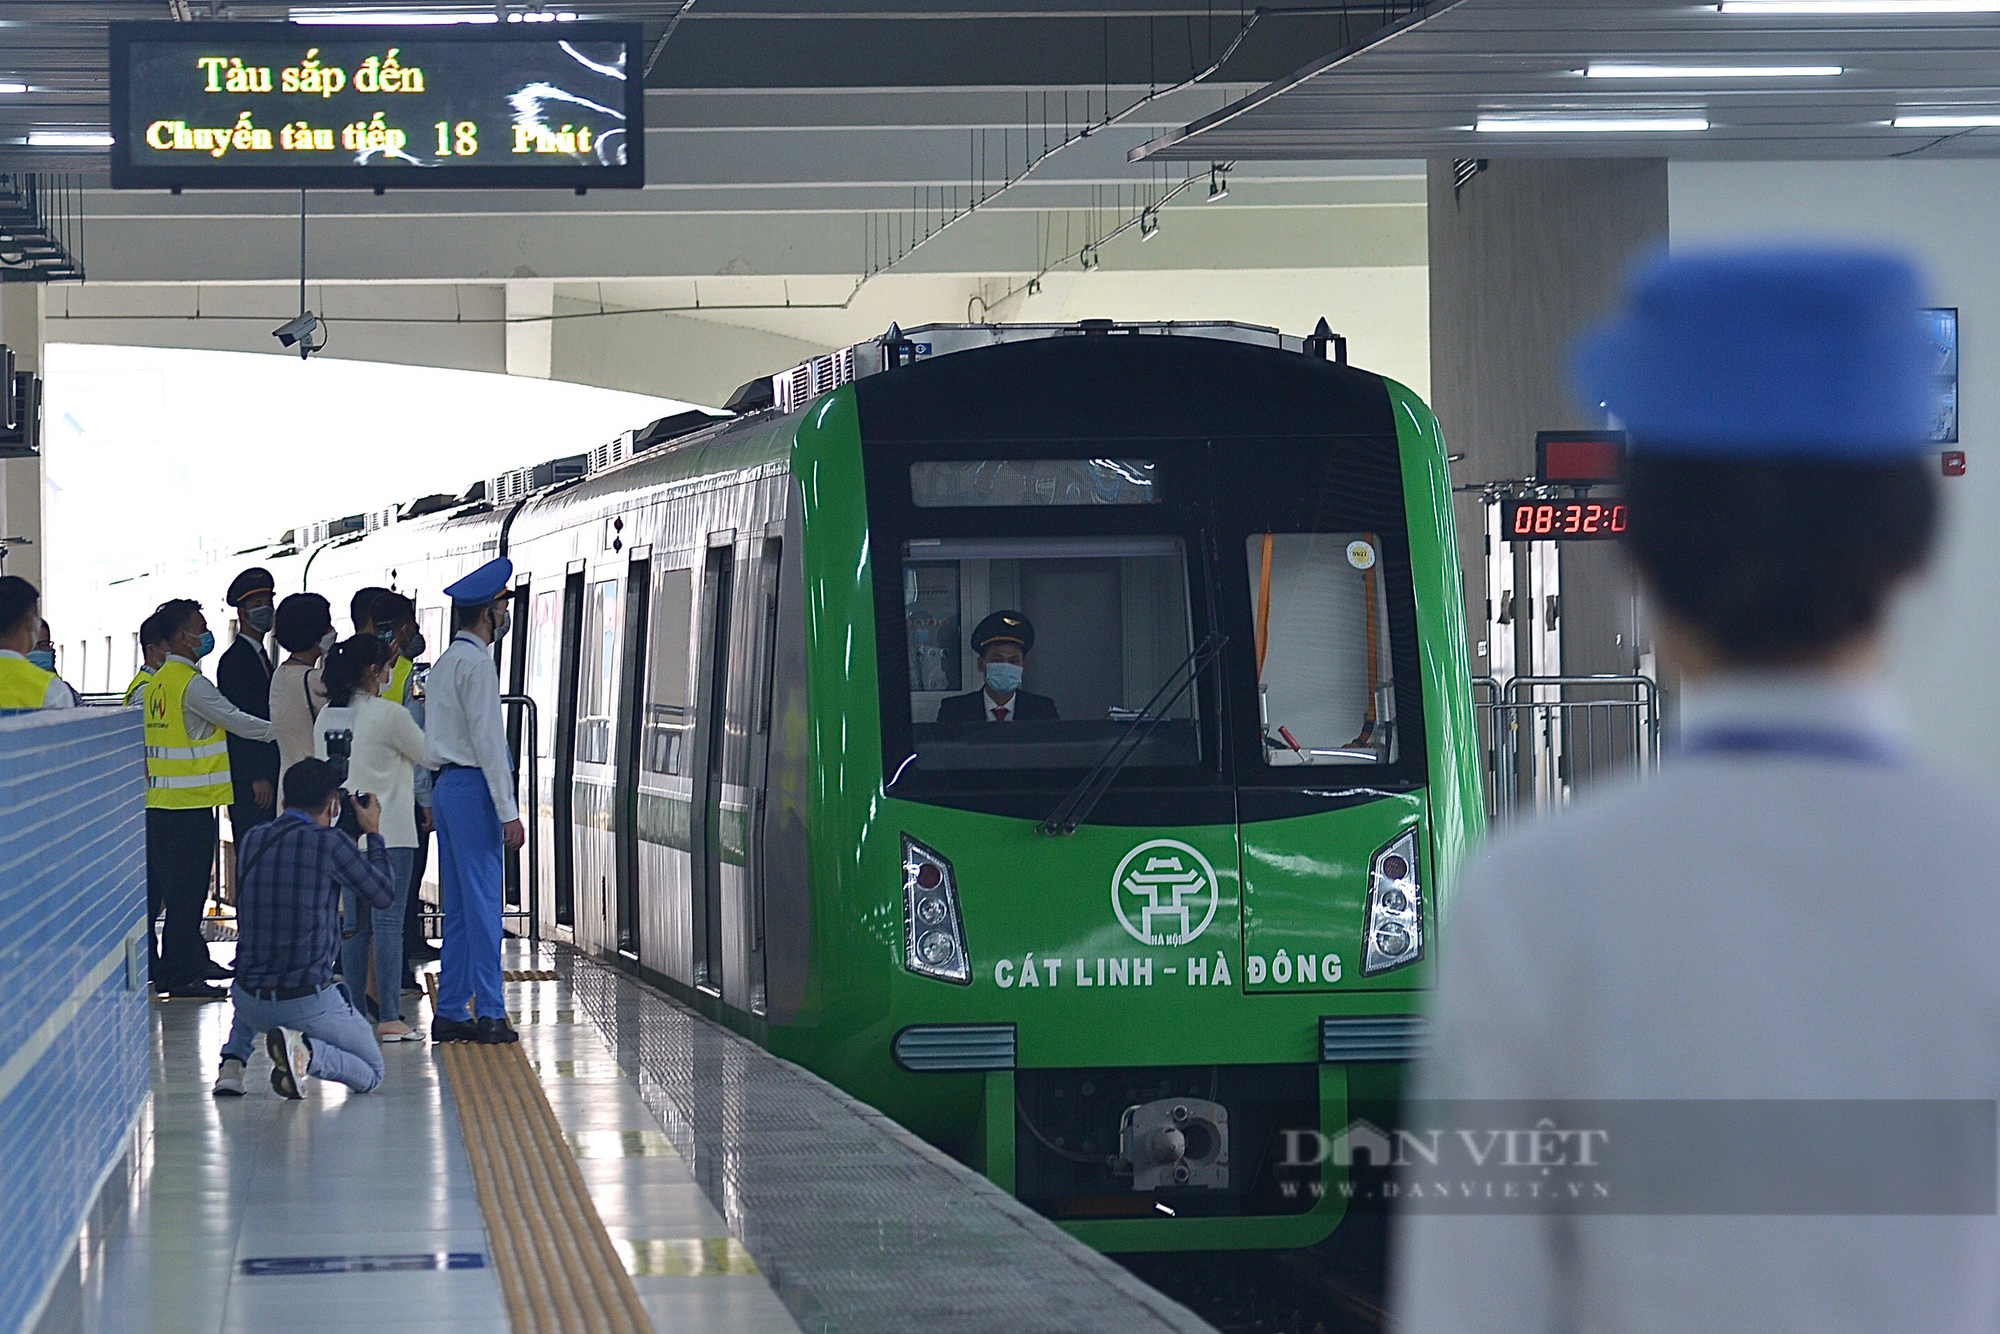 Ngày đầu vận hành, đường sắt Cát Linh - Hà Đông phục vụ 25.680 lượt hành khách - Ảnh 1.